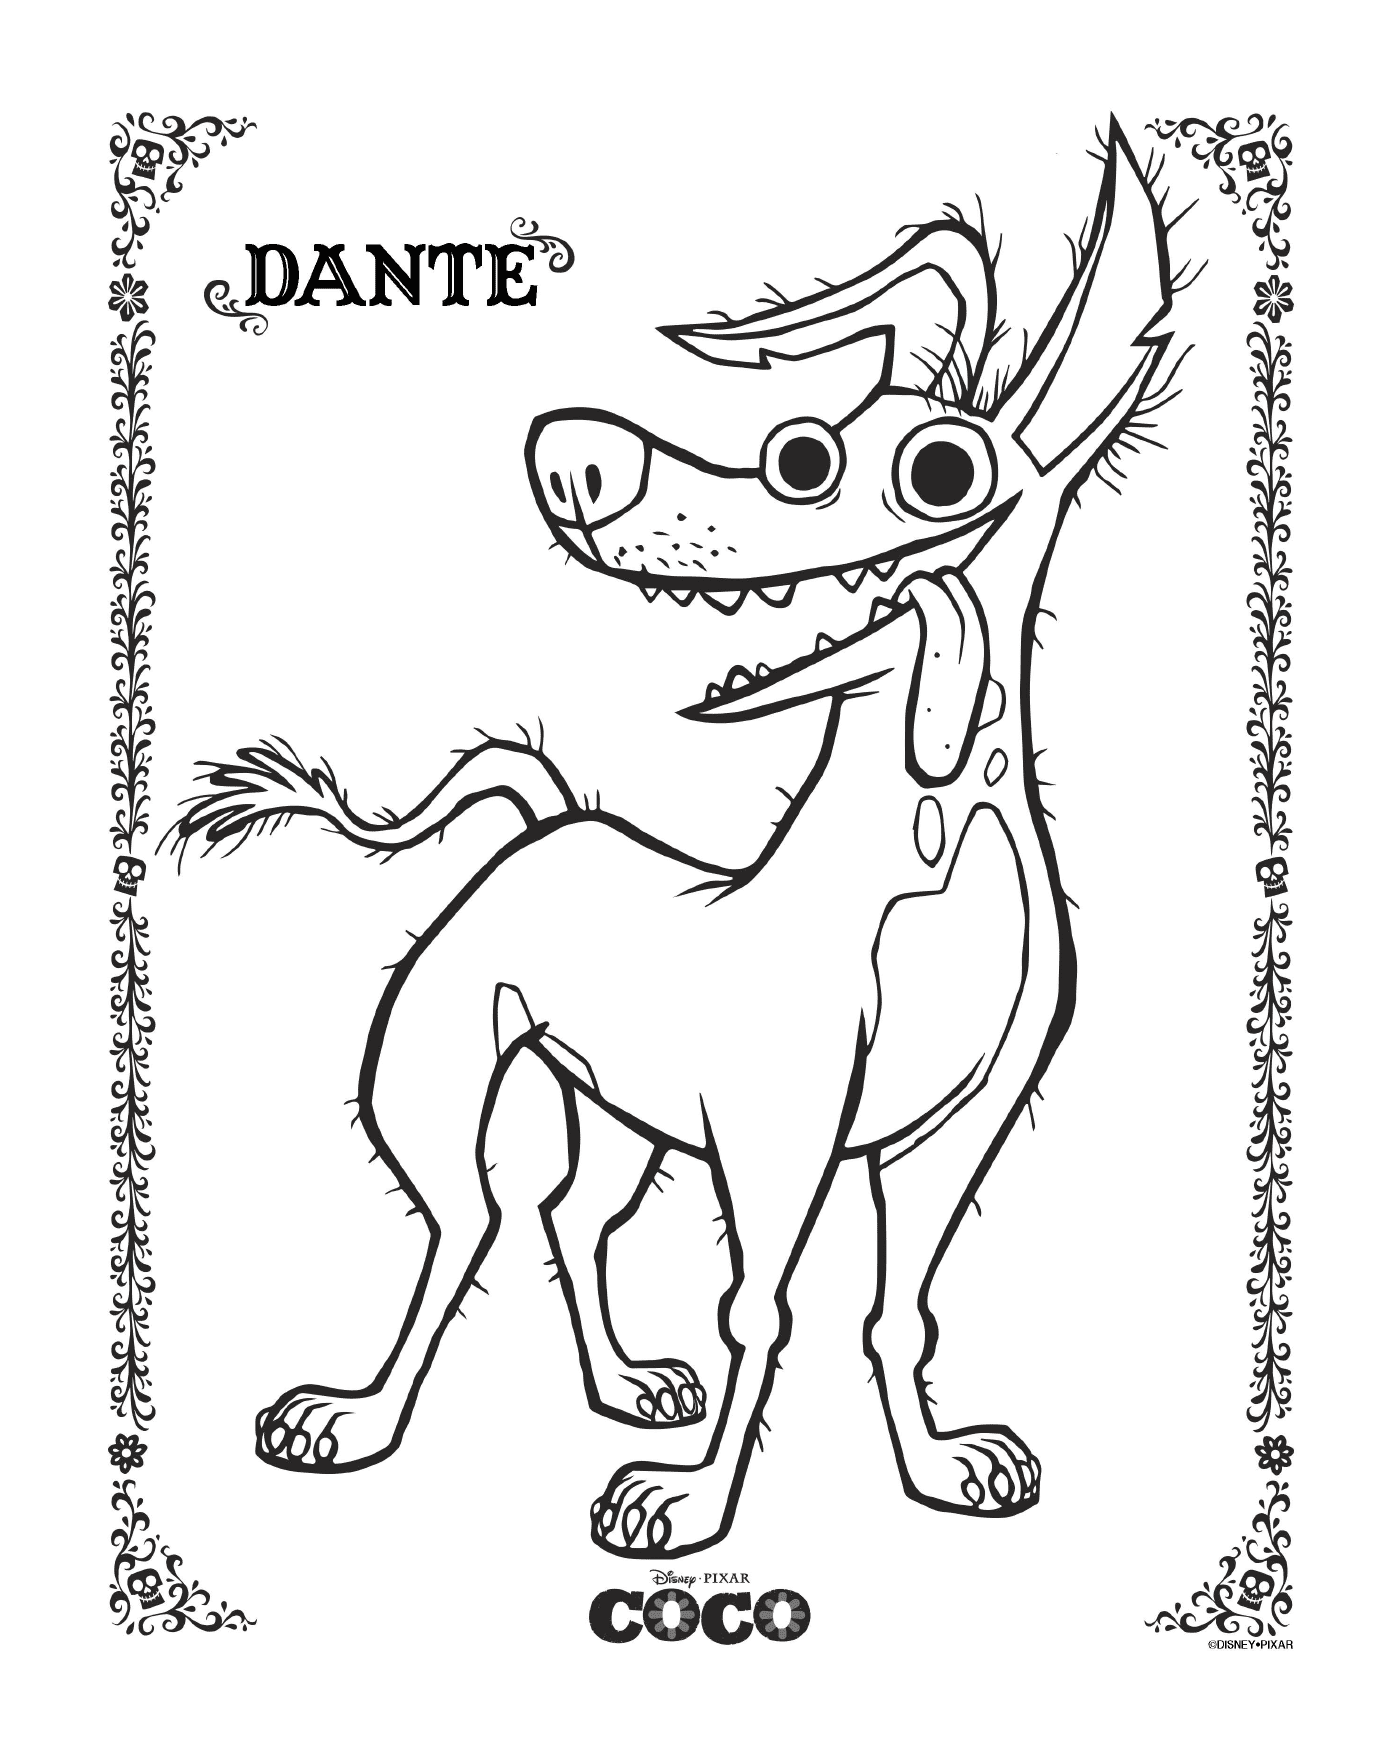  Dante 2 en Coco, Disney 